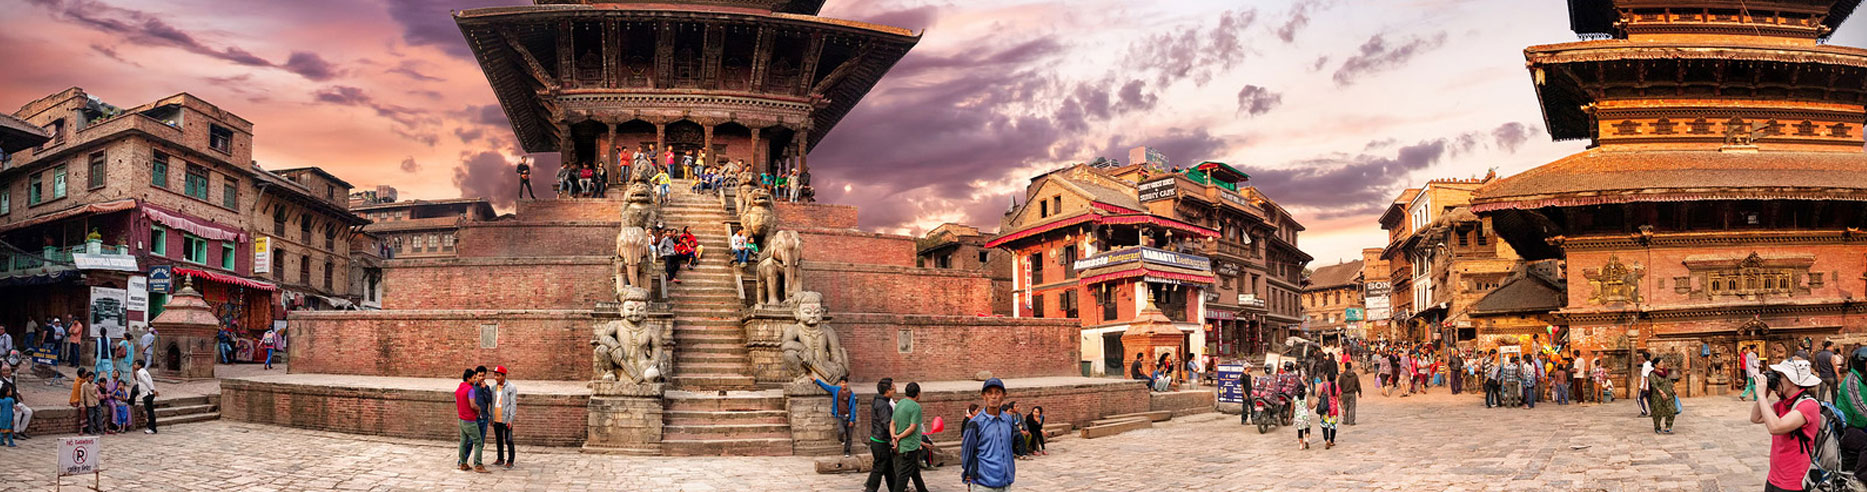 Kathmandu Pokhara Chitwan